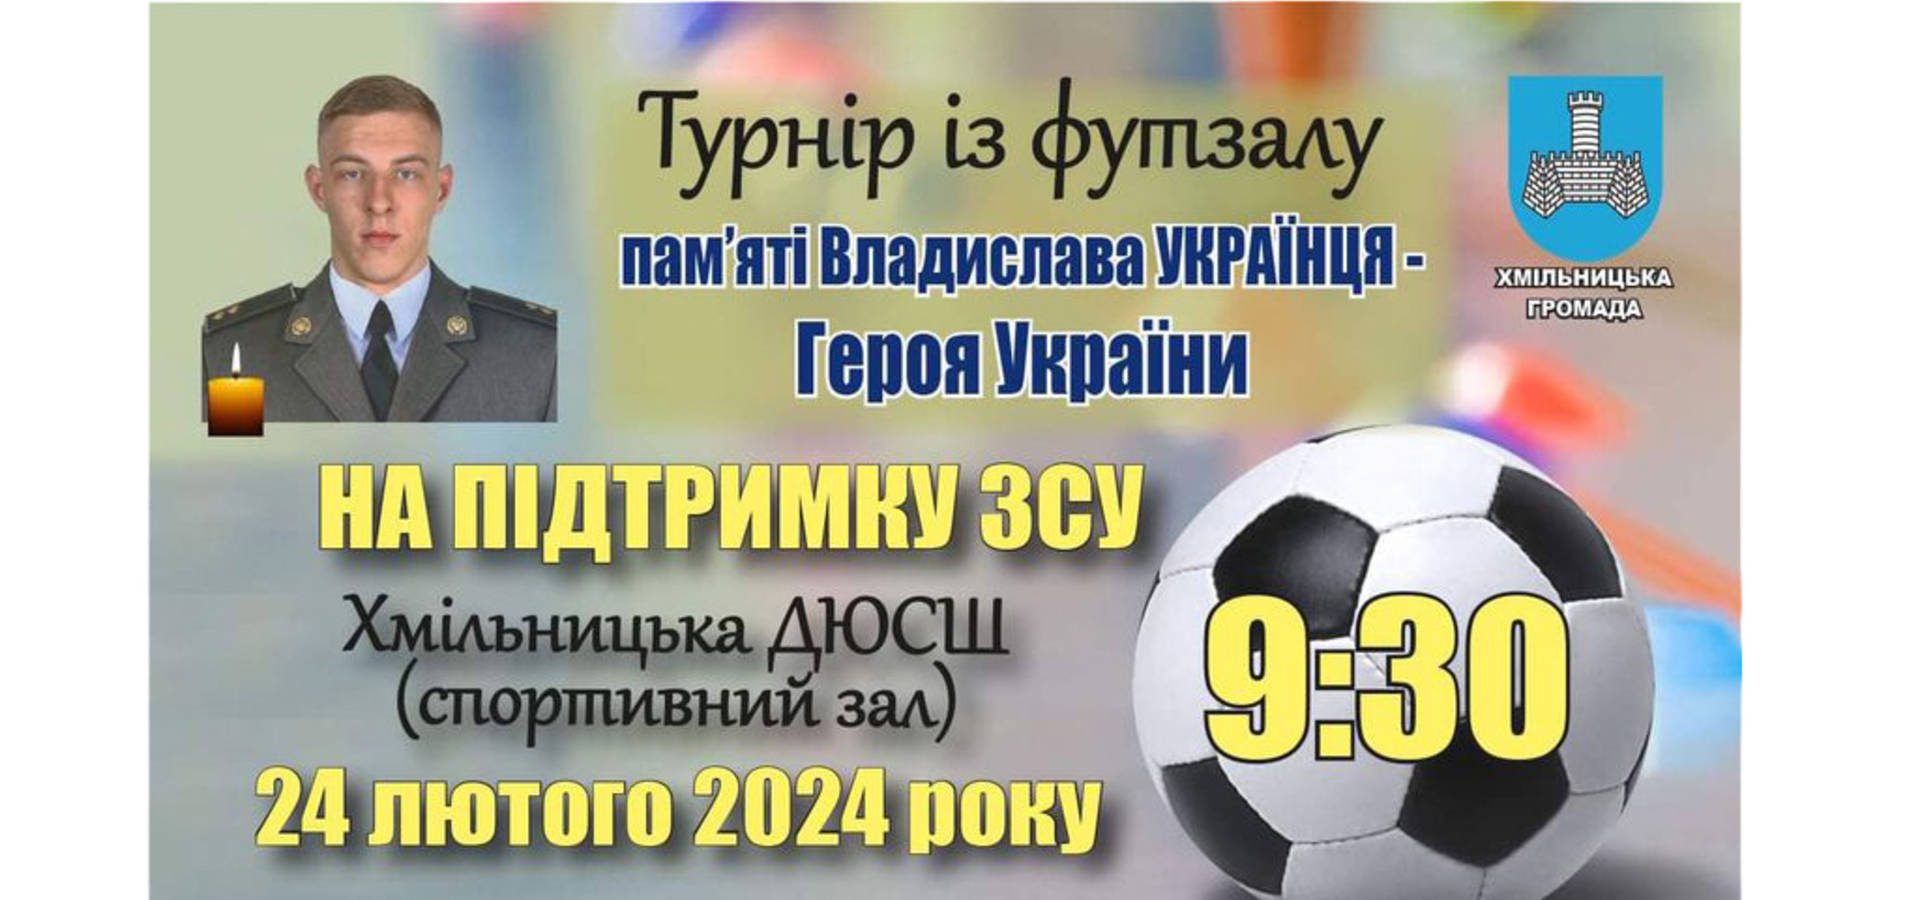 24 лютого у Хмільнику відбудеться благодійний турнір з футзалу пам'яті Владислава Українця